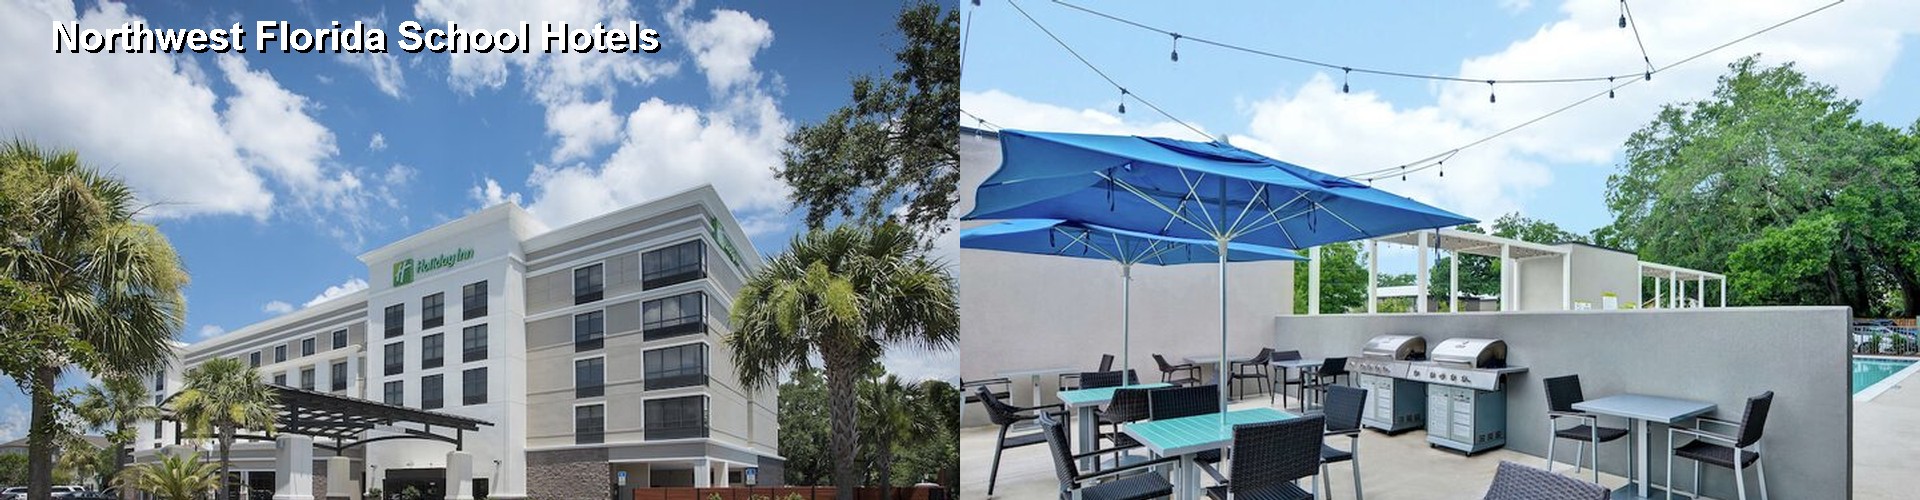 2 Best Hotels near Northwest Florida School